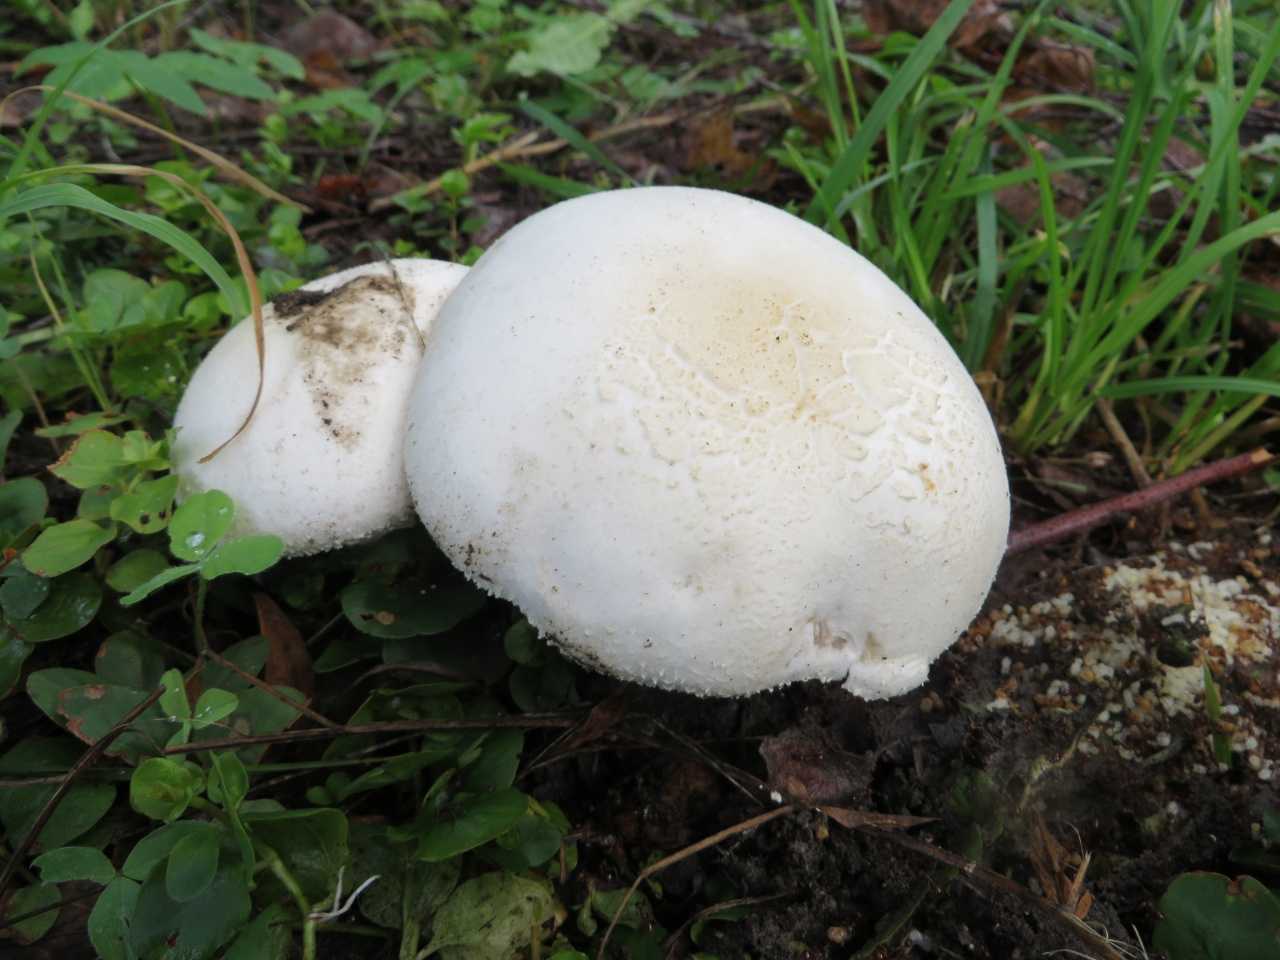 Волчий гриб, колпак, благушка — всё это названия лесного шампиньона